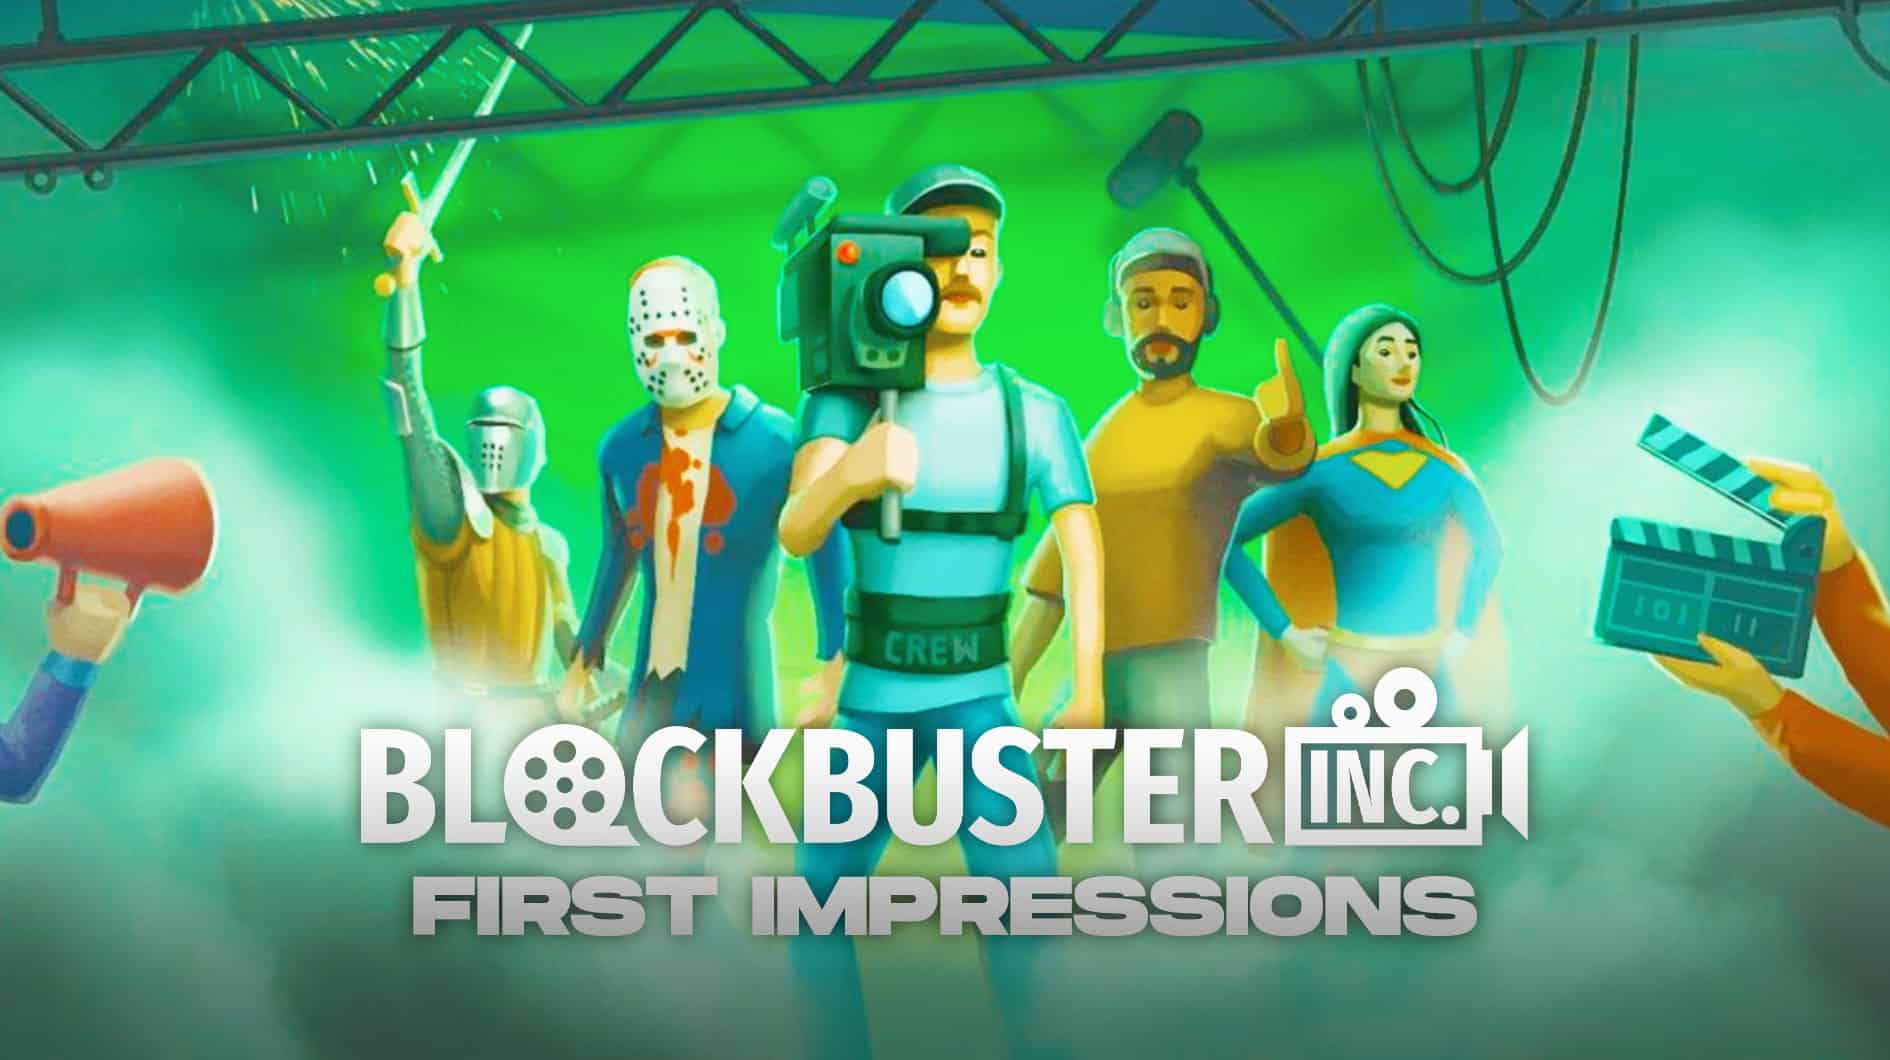 Blockbuster Inc. First Impressions